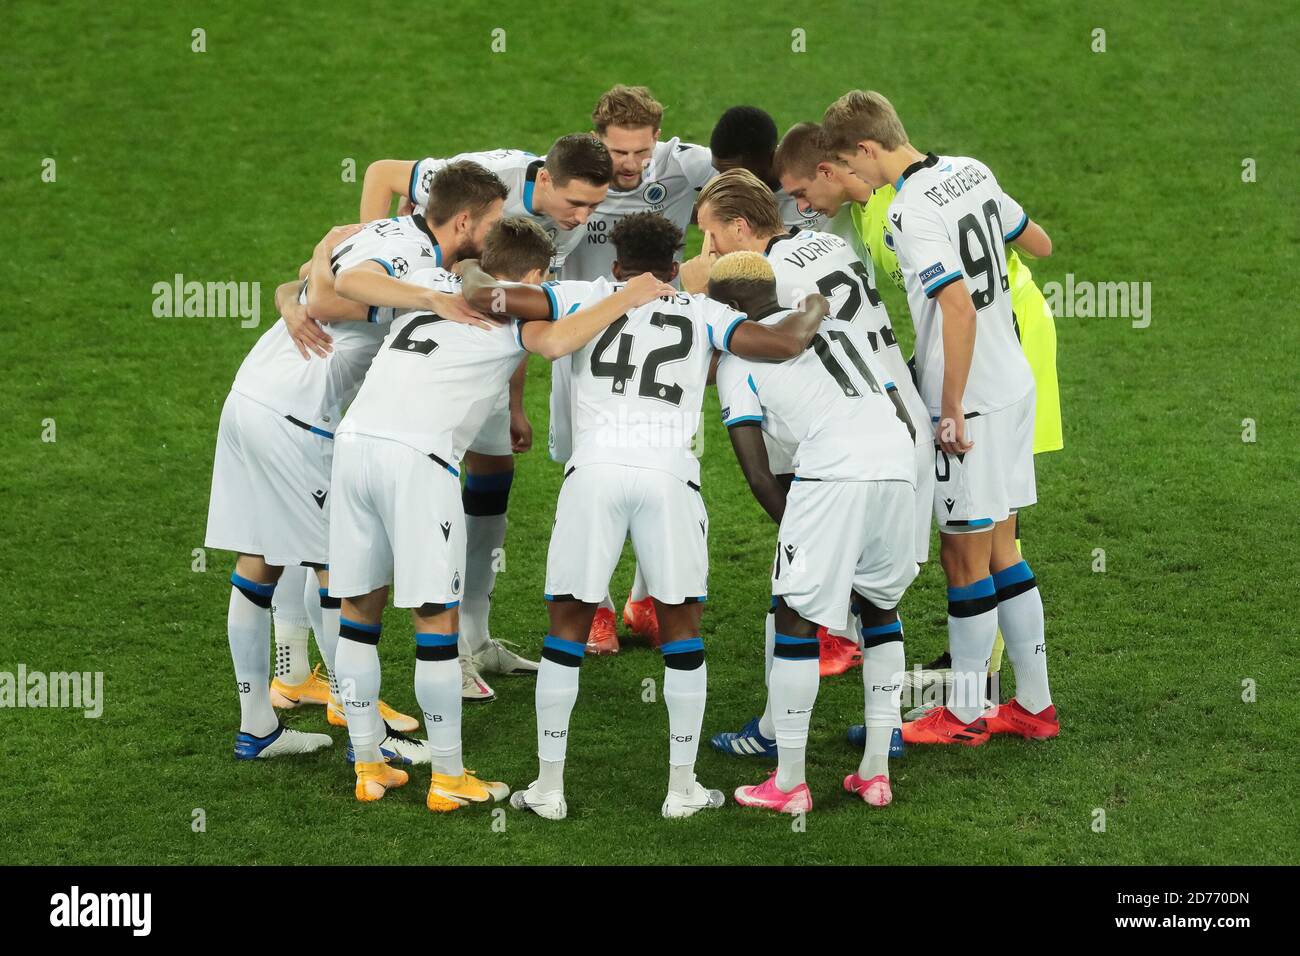 Los jugadores de lub Brugge se estrellan ante la Liga de Campeones de la UEFA, el escenario de grupo, el partido de fútbol del Grupo F entre Zenit y el Club Brugge el 20 de octubre de 2020 en Foto de stock